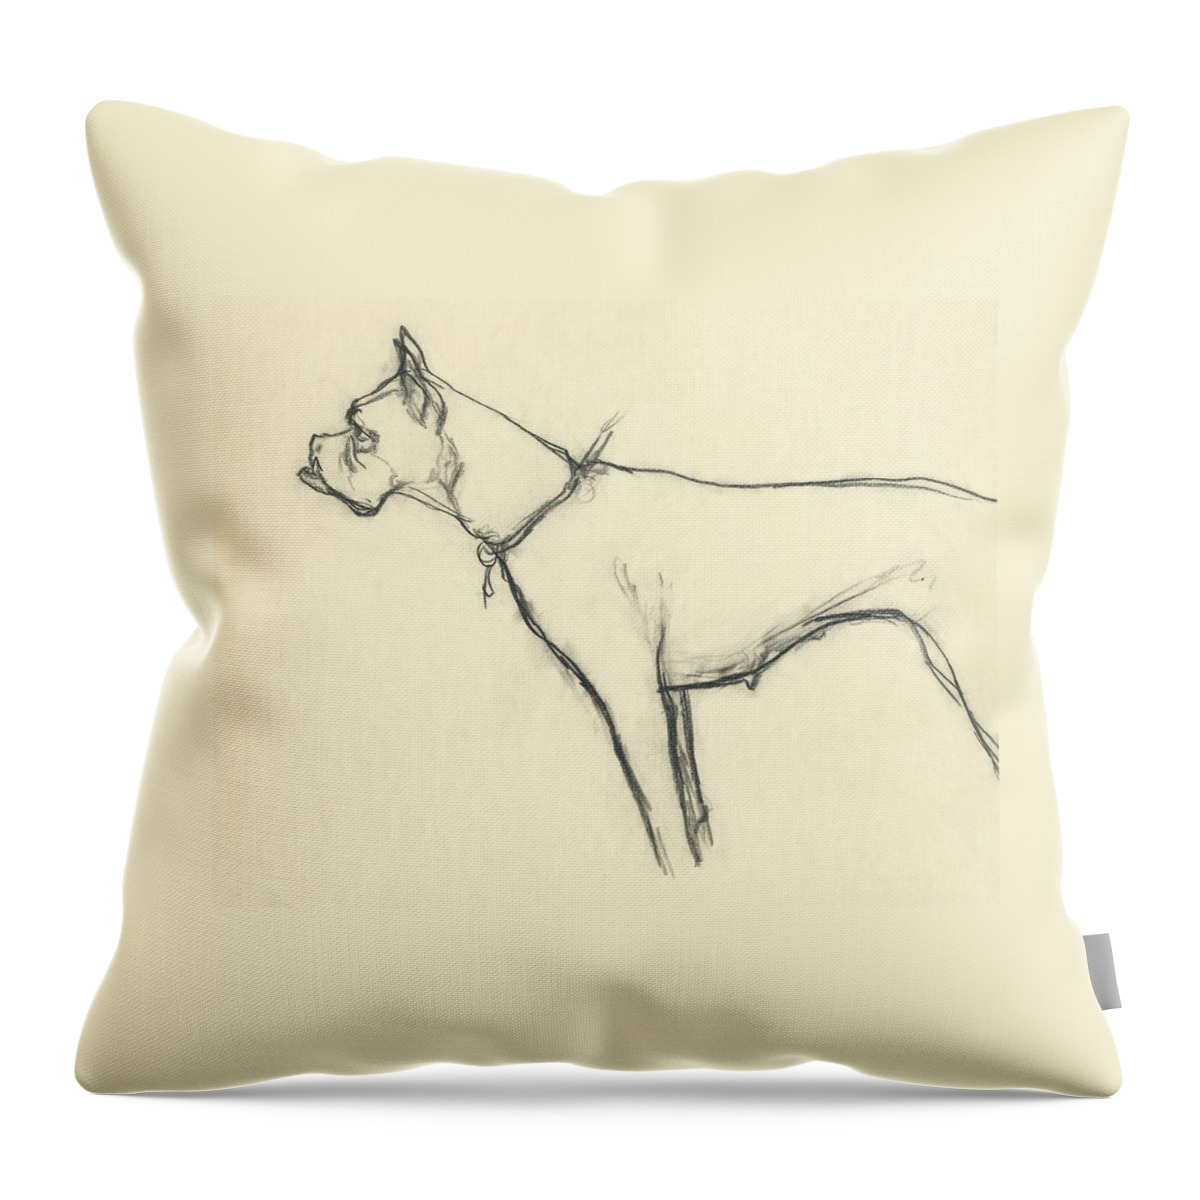 A Boxer Dog Throw Pillow